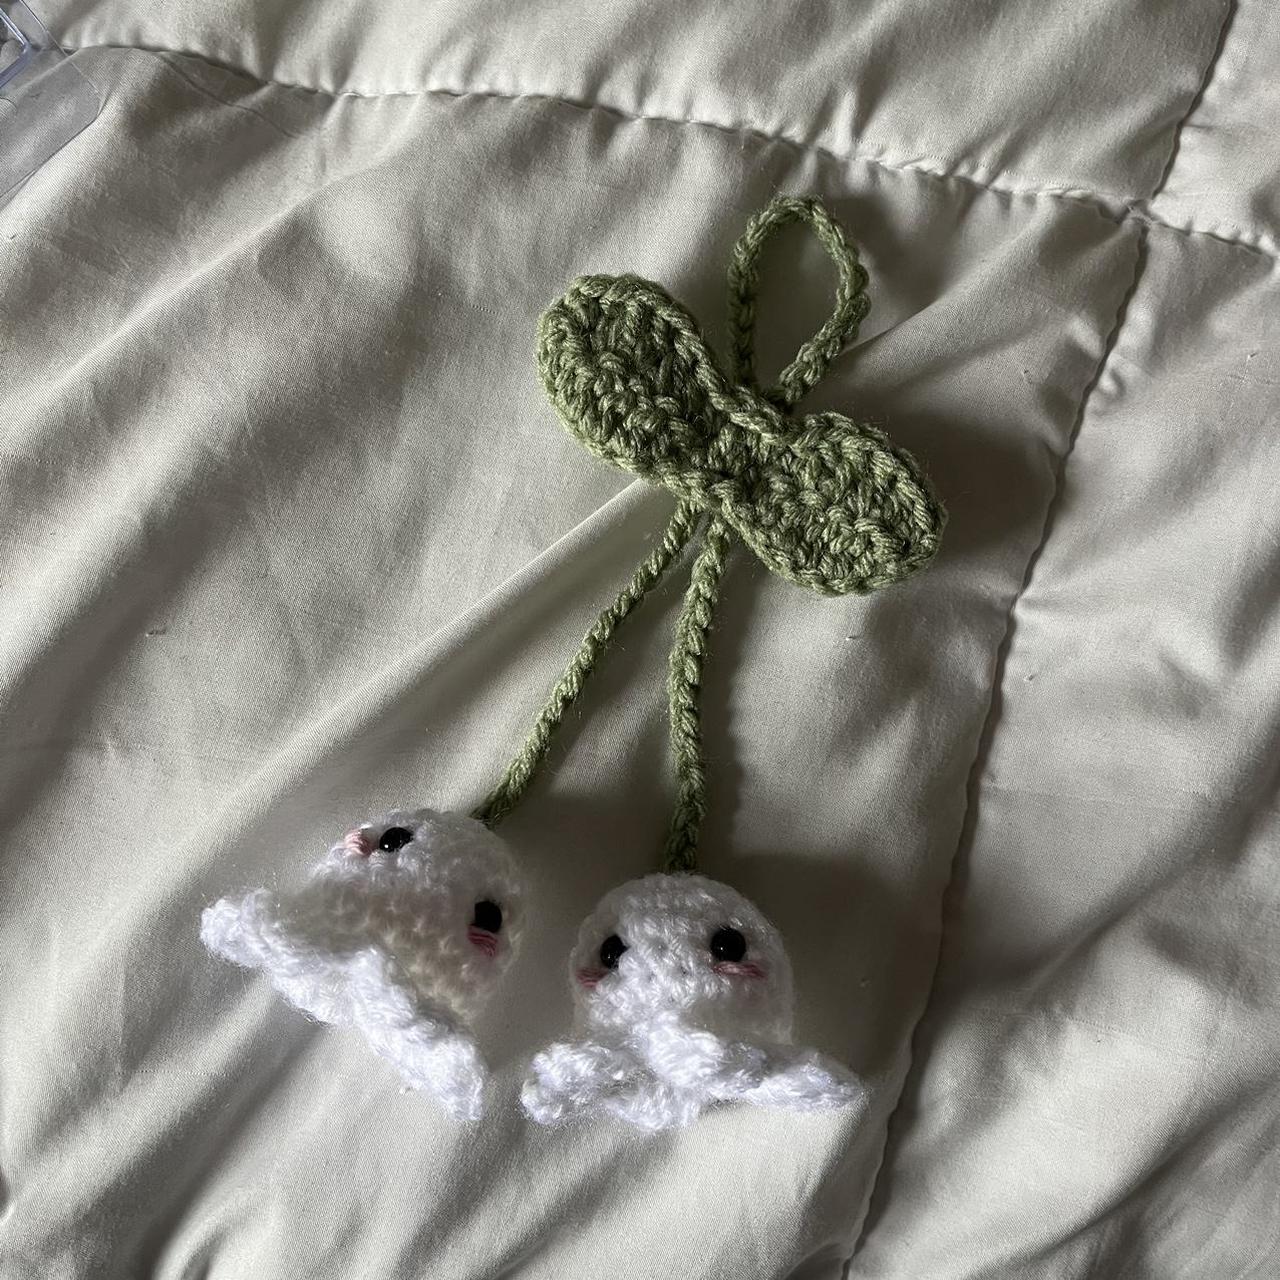 Handmade flower crochet clips. Boho-inspired. Pack - Depop